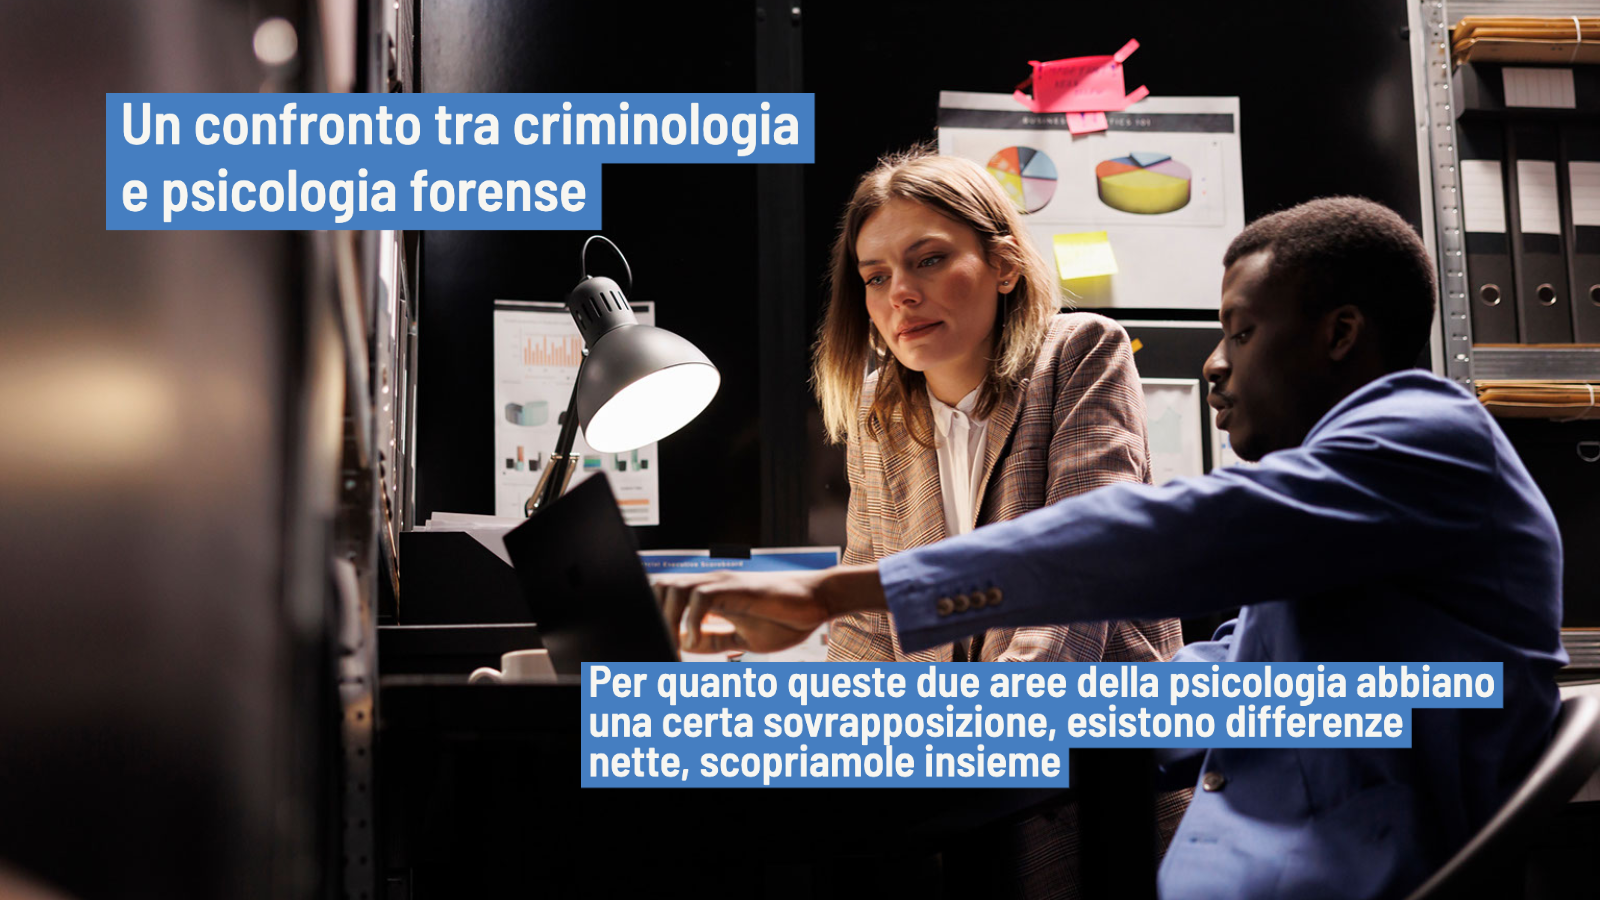 Criminologia e Psicologia forense: due ambiti a confronto